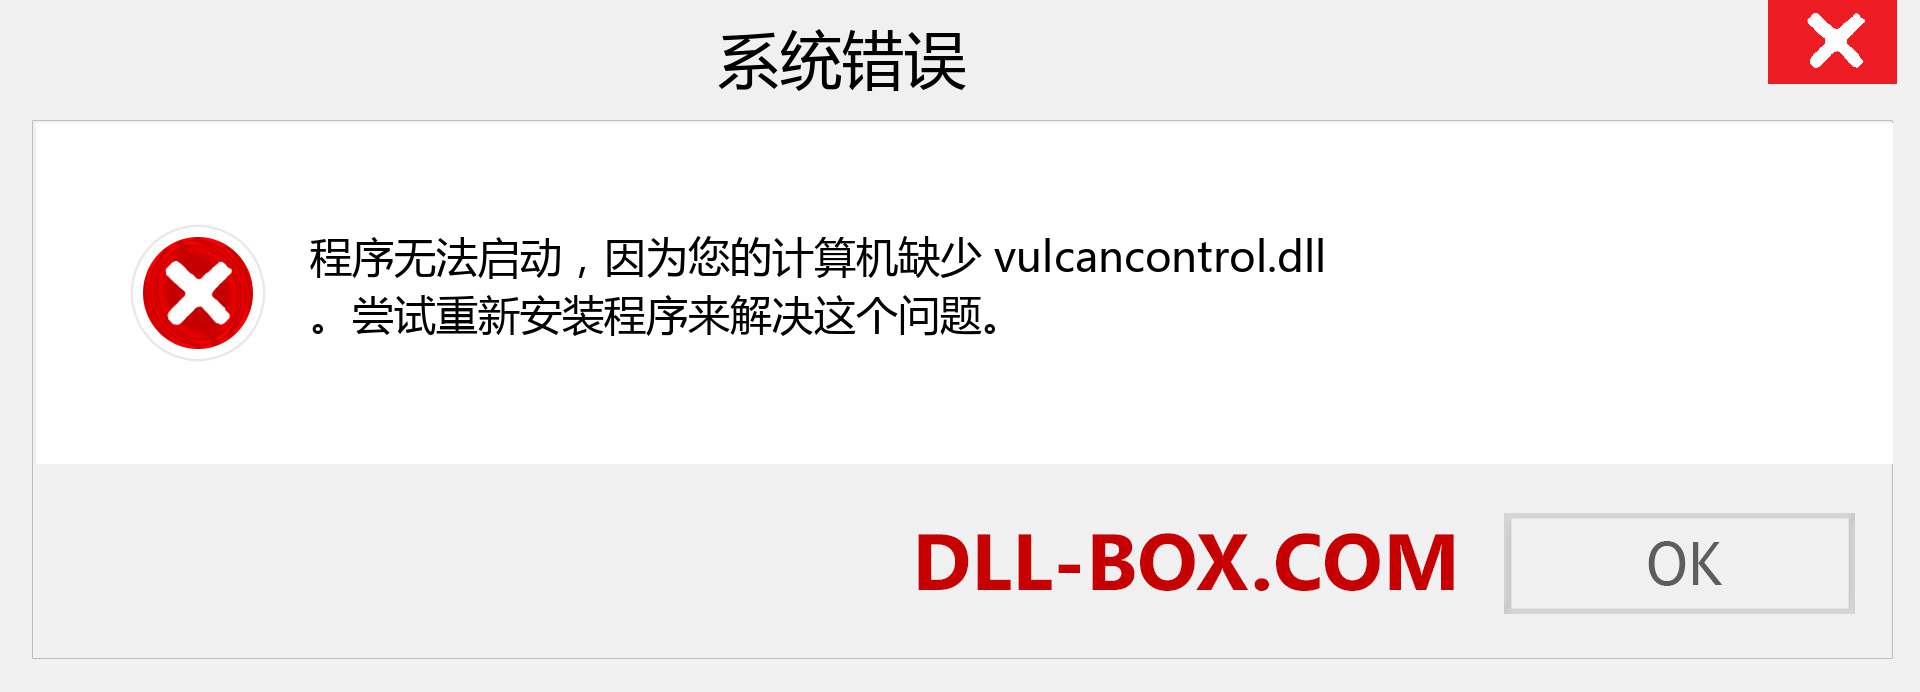 vulcancontrol.dll 文件丢失？。 适用于 Windows 7、8、10 的下载 - 修复 Windows、照片、图像上的 vulcancontrol dll 丢失错误